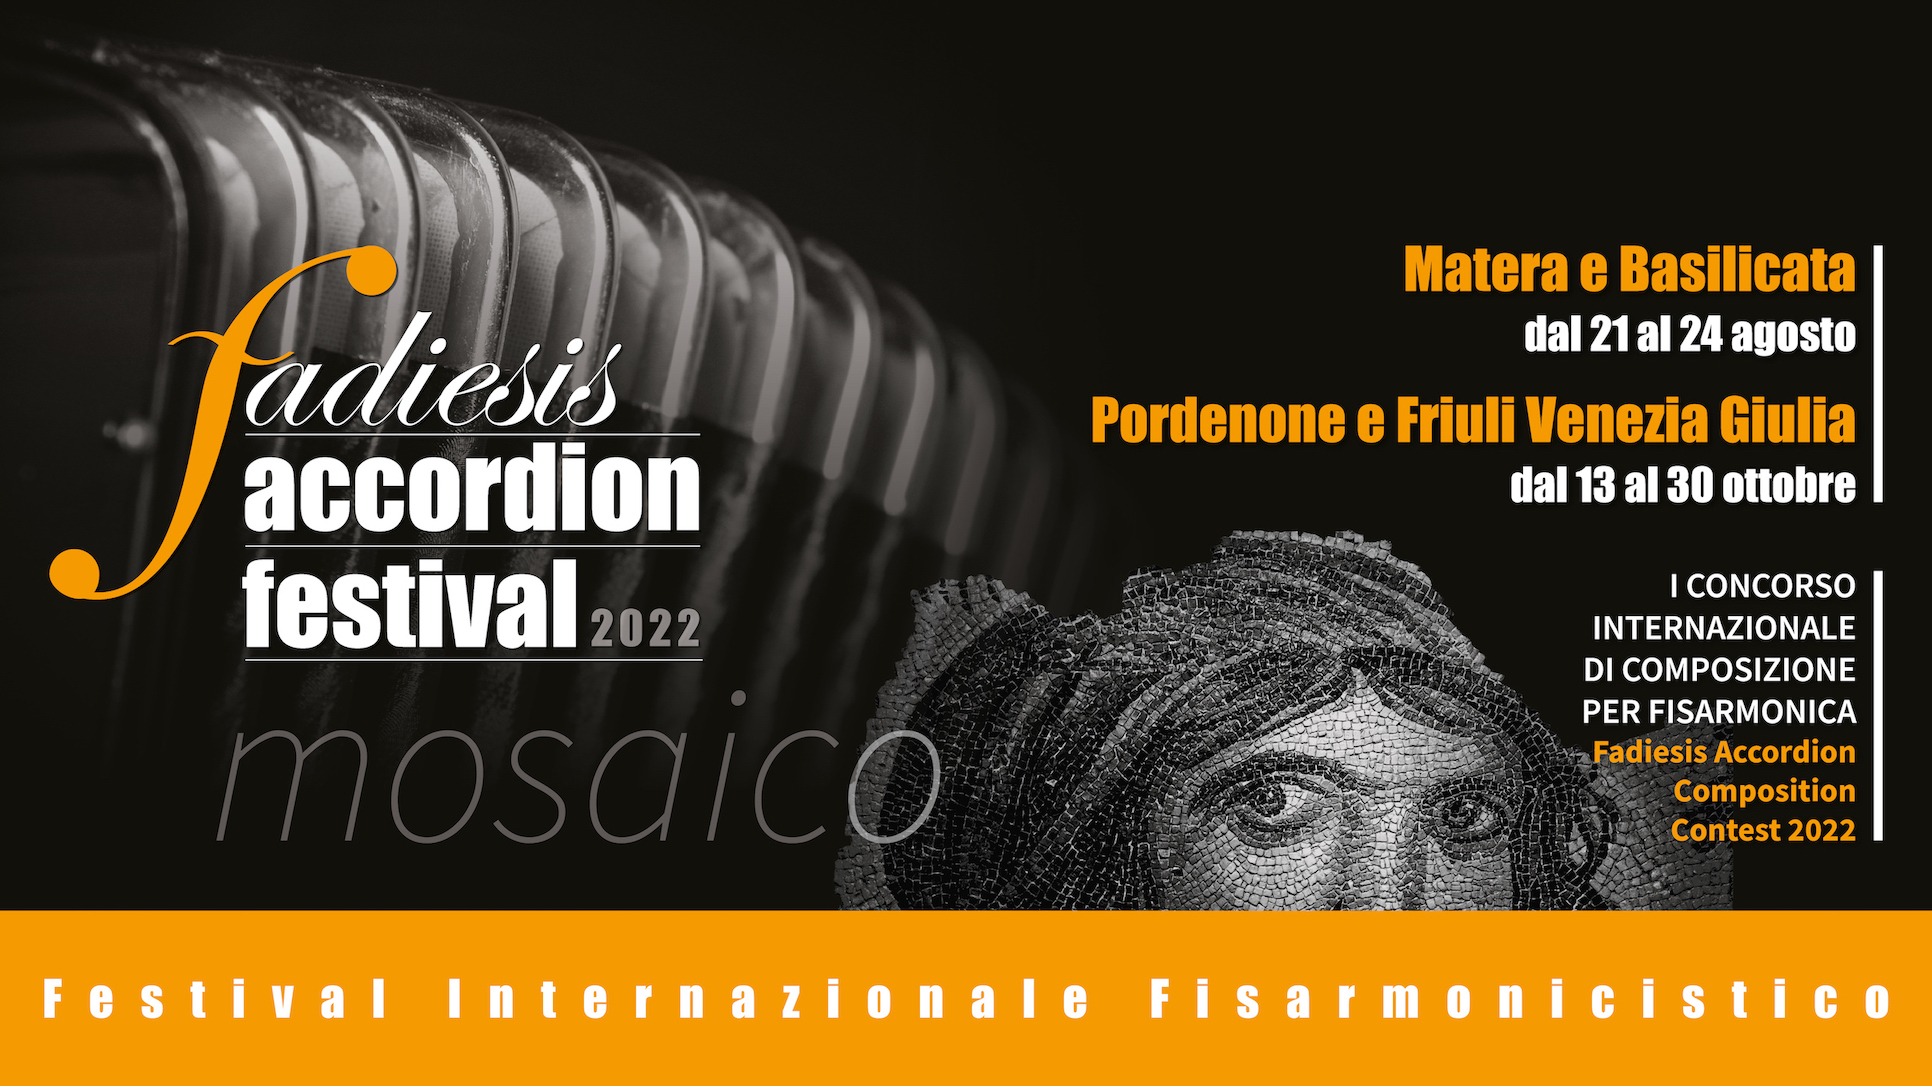 XII in Basilicata del Fadiesis Accordion Festival: quattro i concerti dal 21 al 24 agosto che apriranno il festival in terra lucana